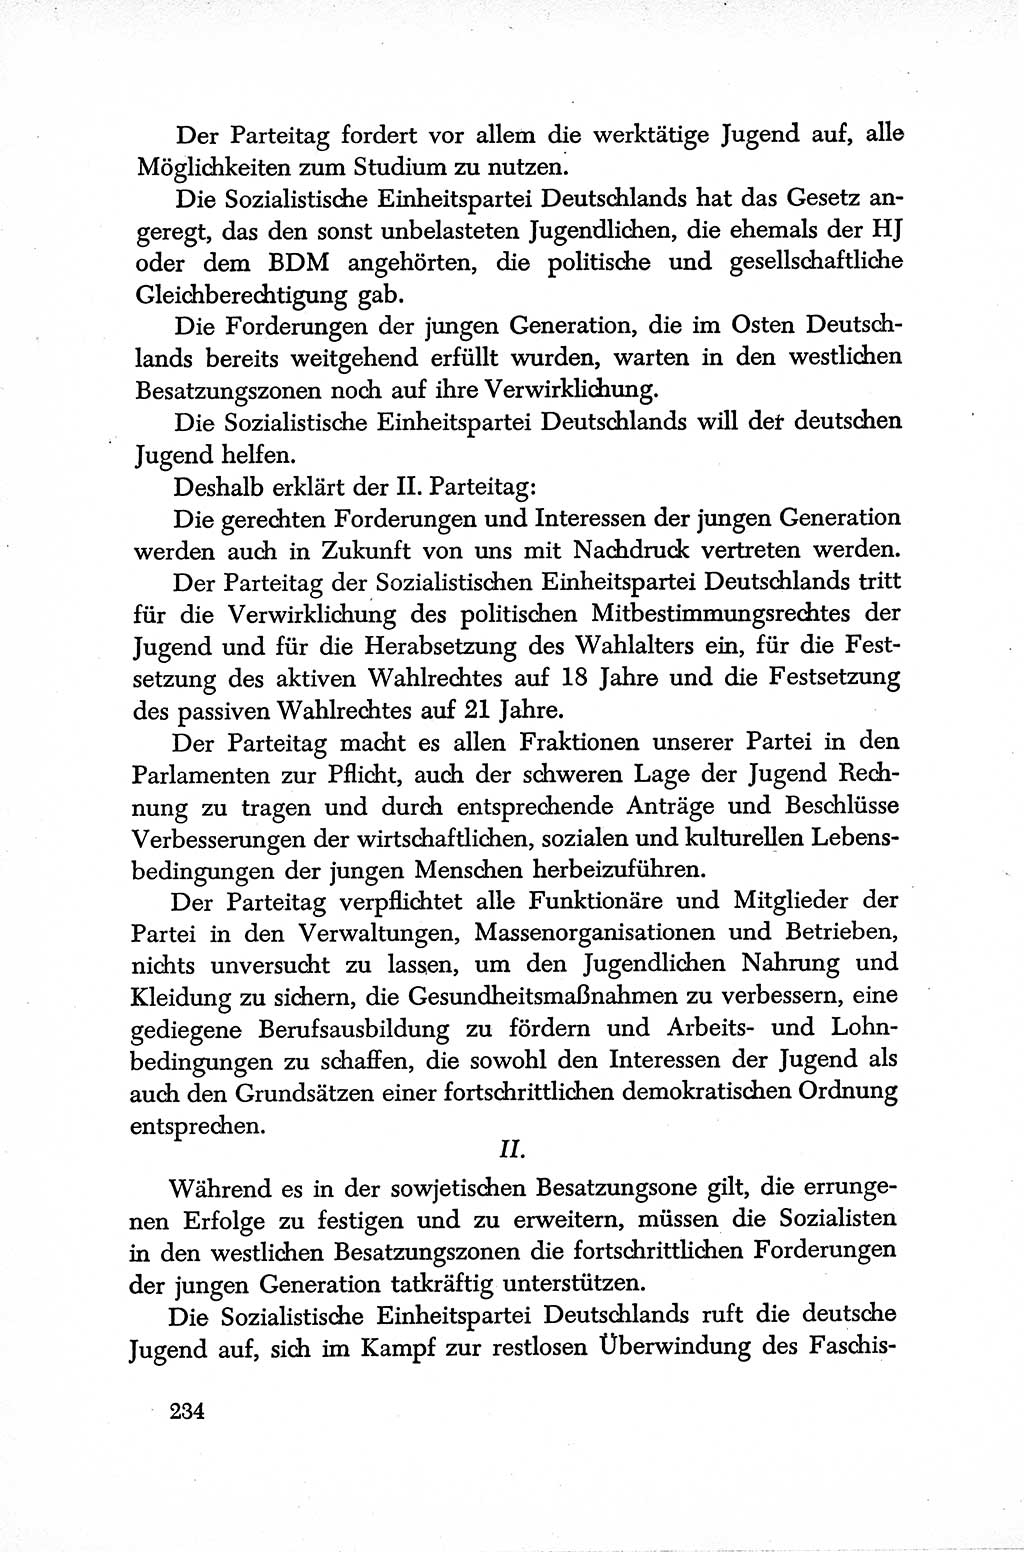 Dokumente der Sozialistischen Einheitspartei Deutschlands (SED) [Sowjetische Besatzungszone (SBZ) Deutschlands] 1946-1948, Seite 234 (Dok. SED SBZ Dtl. 1946-1948, S. 234)